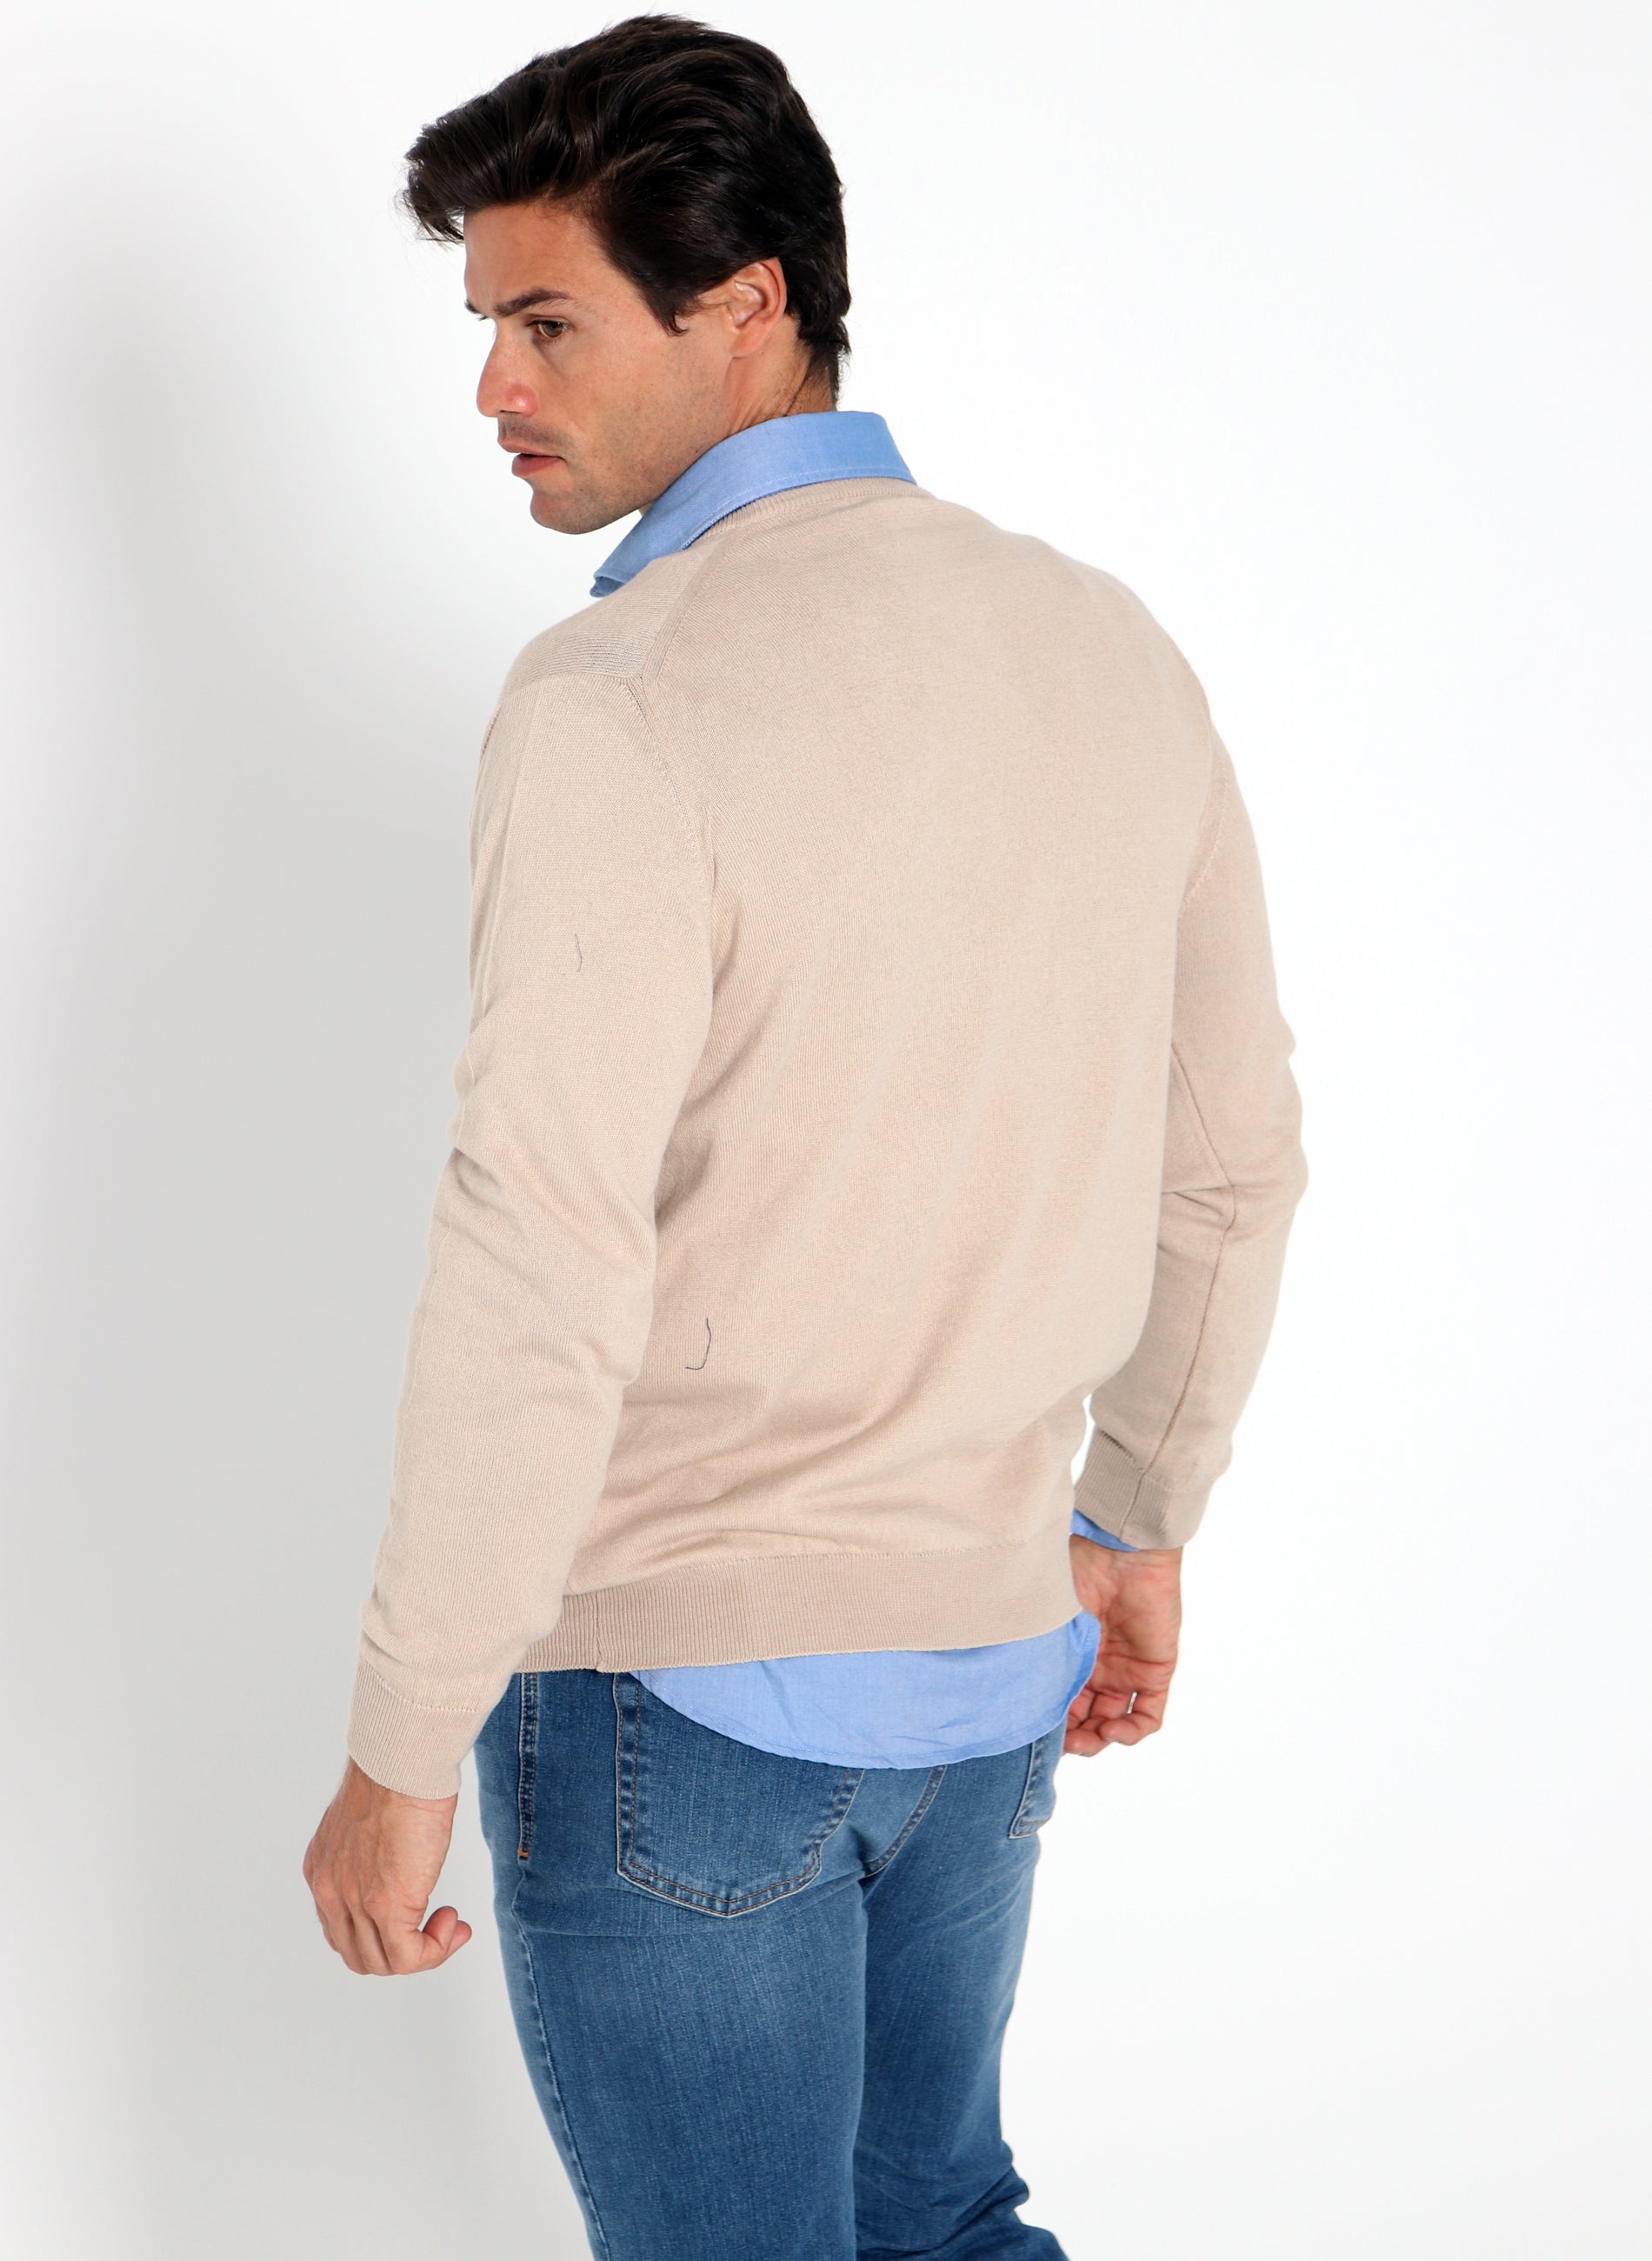 Men's V-Neck Sweater Camel Cashmere